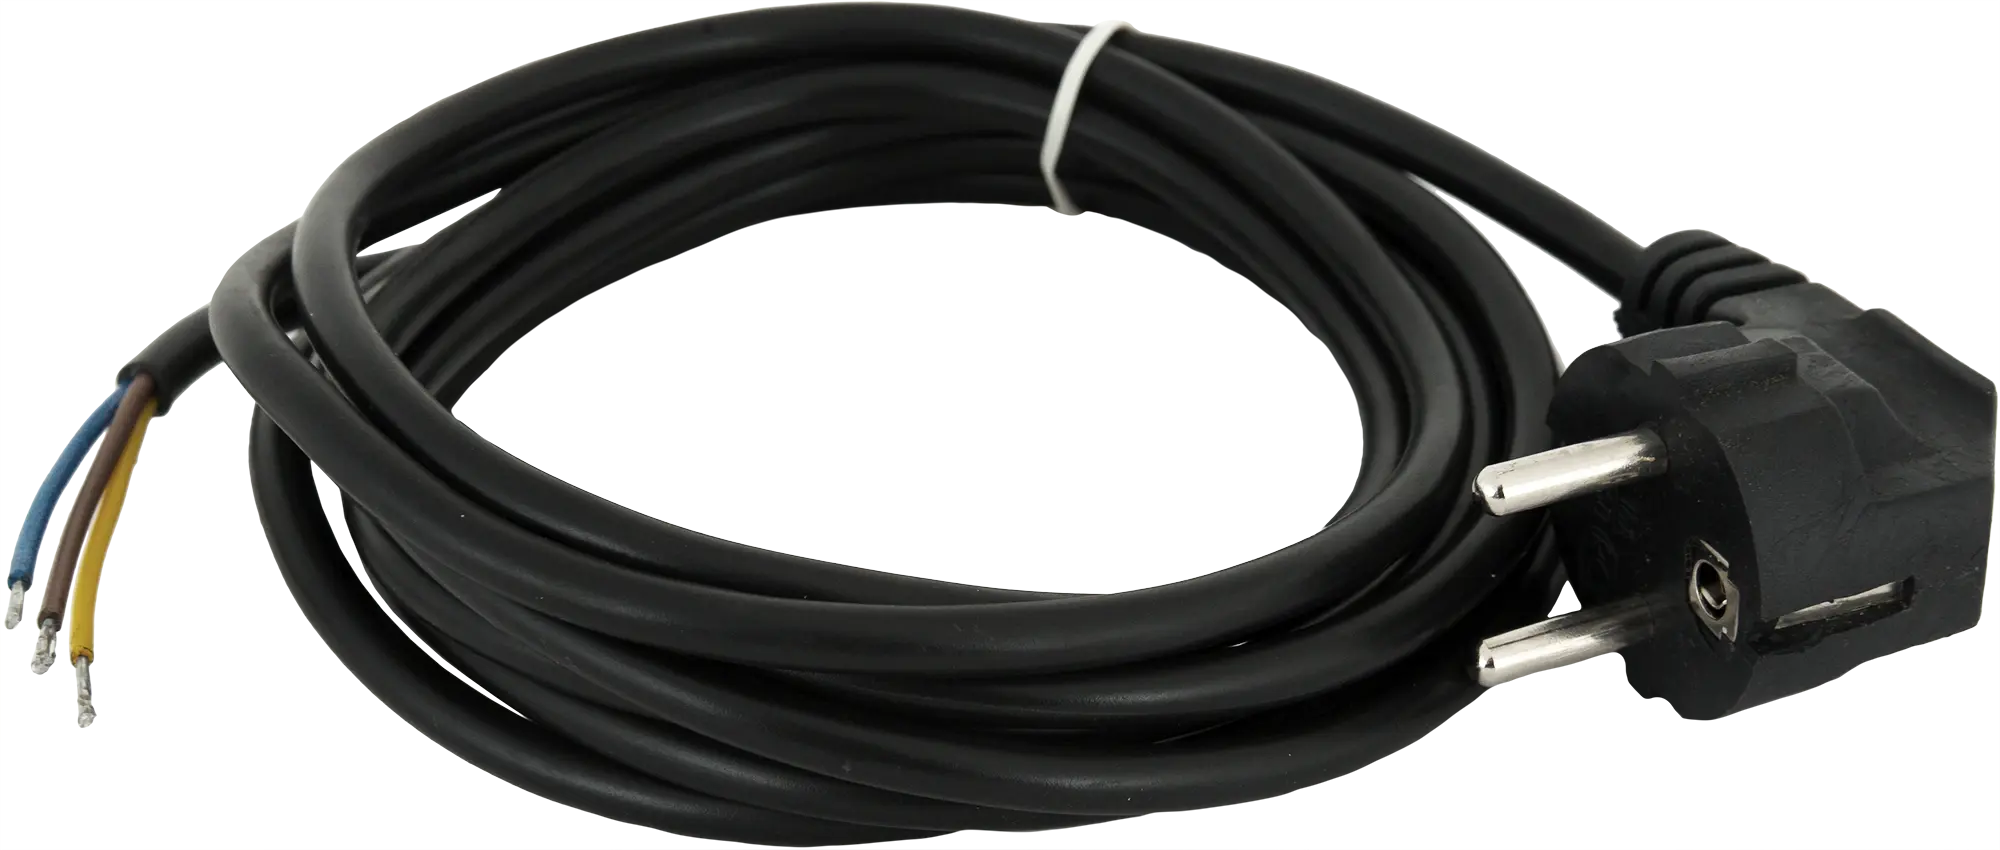 Шнур сетевой с заземлением 10 A 1.5 м цвет чёрный шнур сетевой с ножным выключателем чёрный 3 5 м